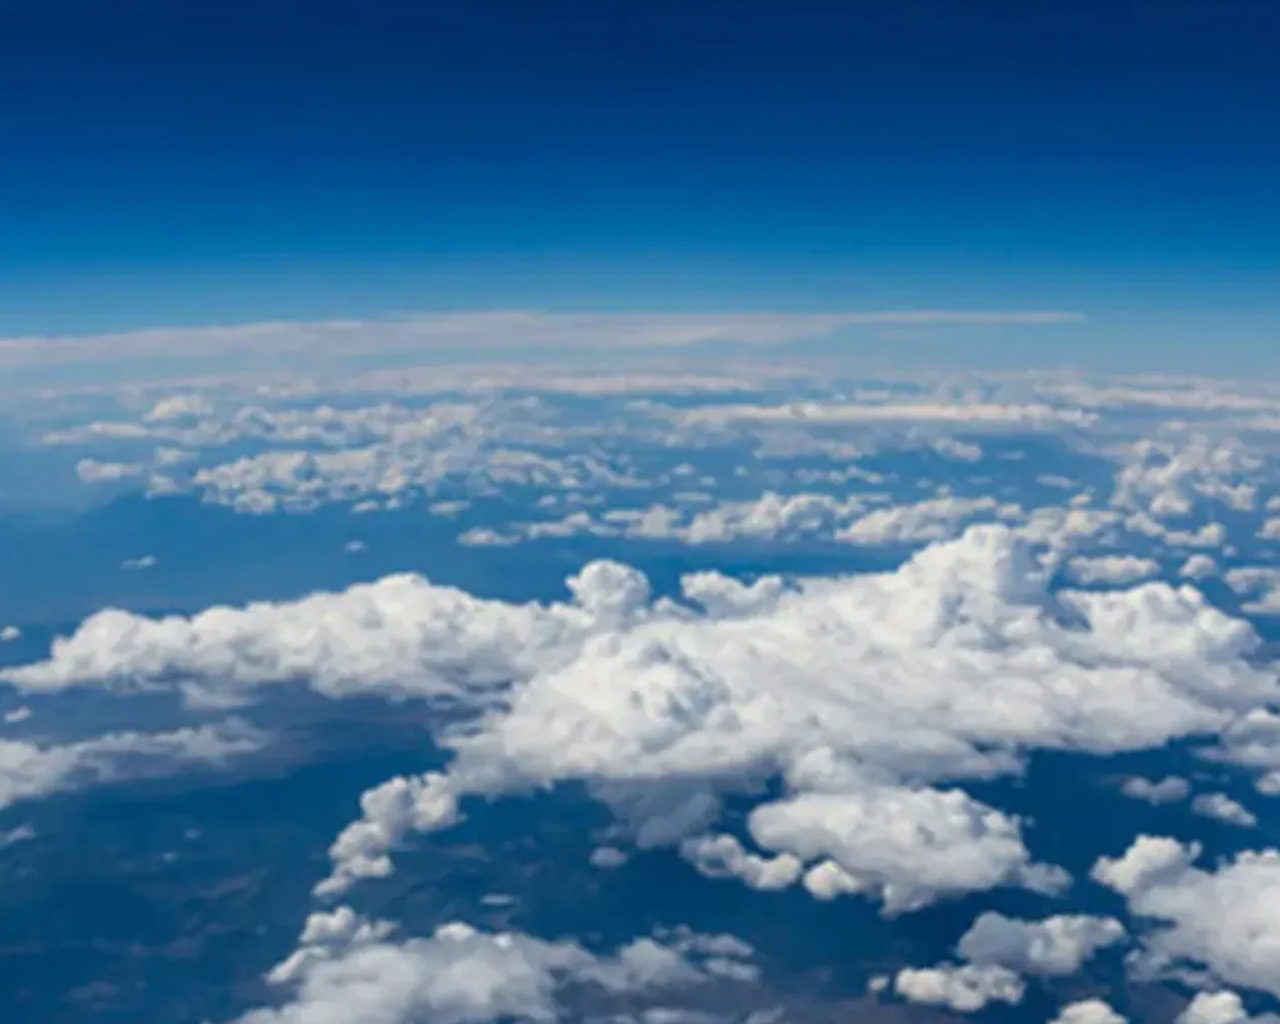 Vista aérea de nubes blancas y esponjosas sobre un paisaje azul, vistas desde la altitud de un avión, con un ligero desenfoque en los bordes.